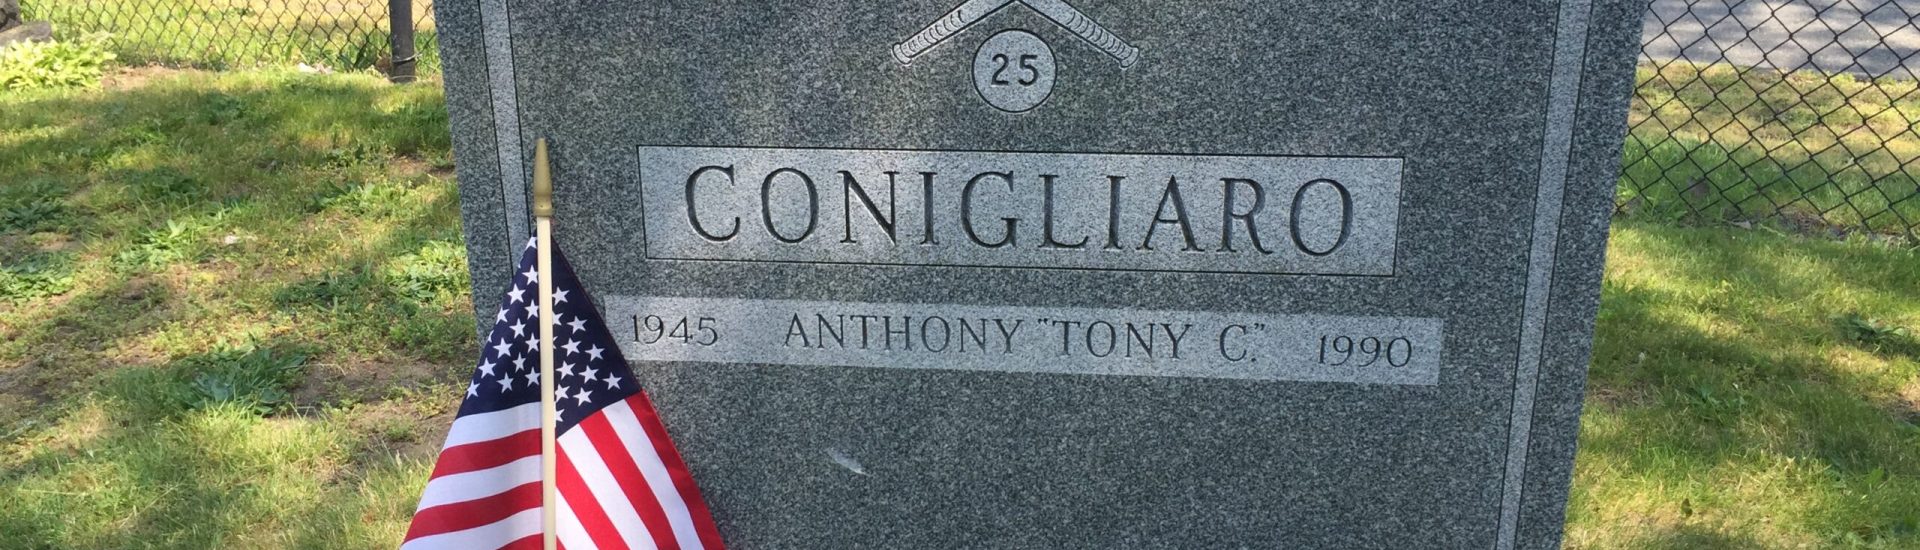 Tony Conigliaro